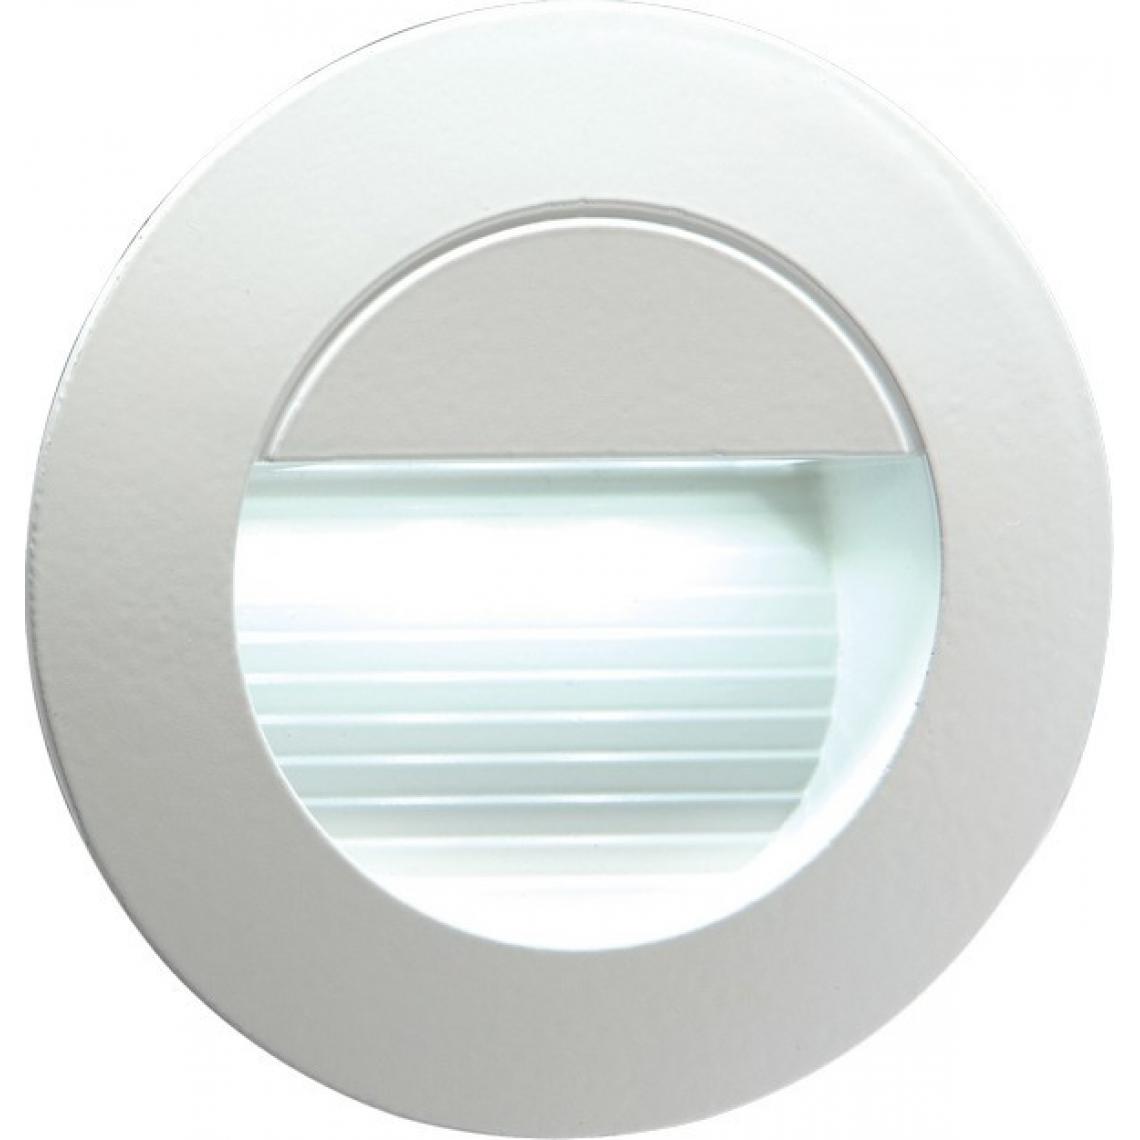 KNIGHTSBRIDGE - IP54 Encastré Rond LED Intérieur / Extérieur Guide / Escalier / Applique Murale LED Blanc, 230V - Lampadaire